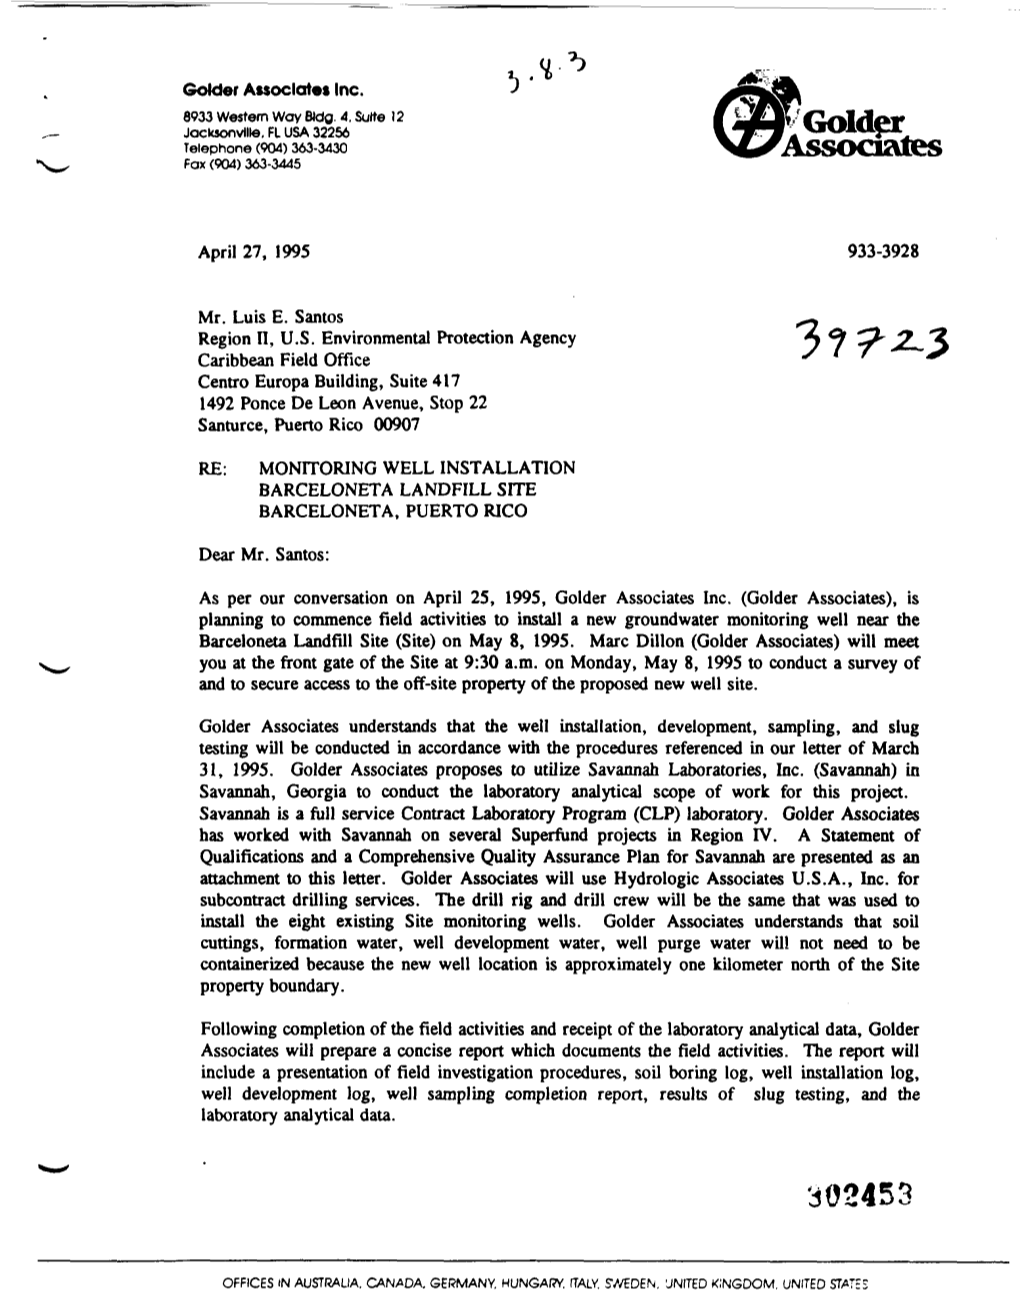 Letter to Mr. Luis E. Santos, U.S. EPA, Region II, Caribbean Field Office